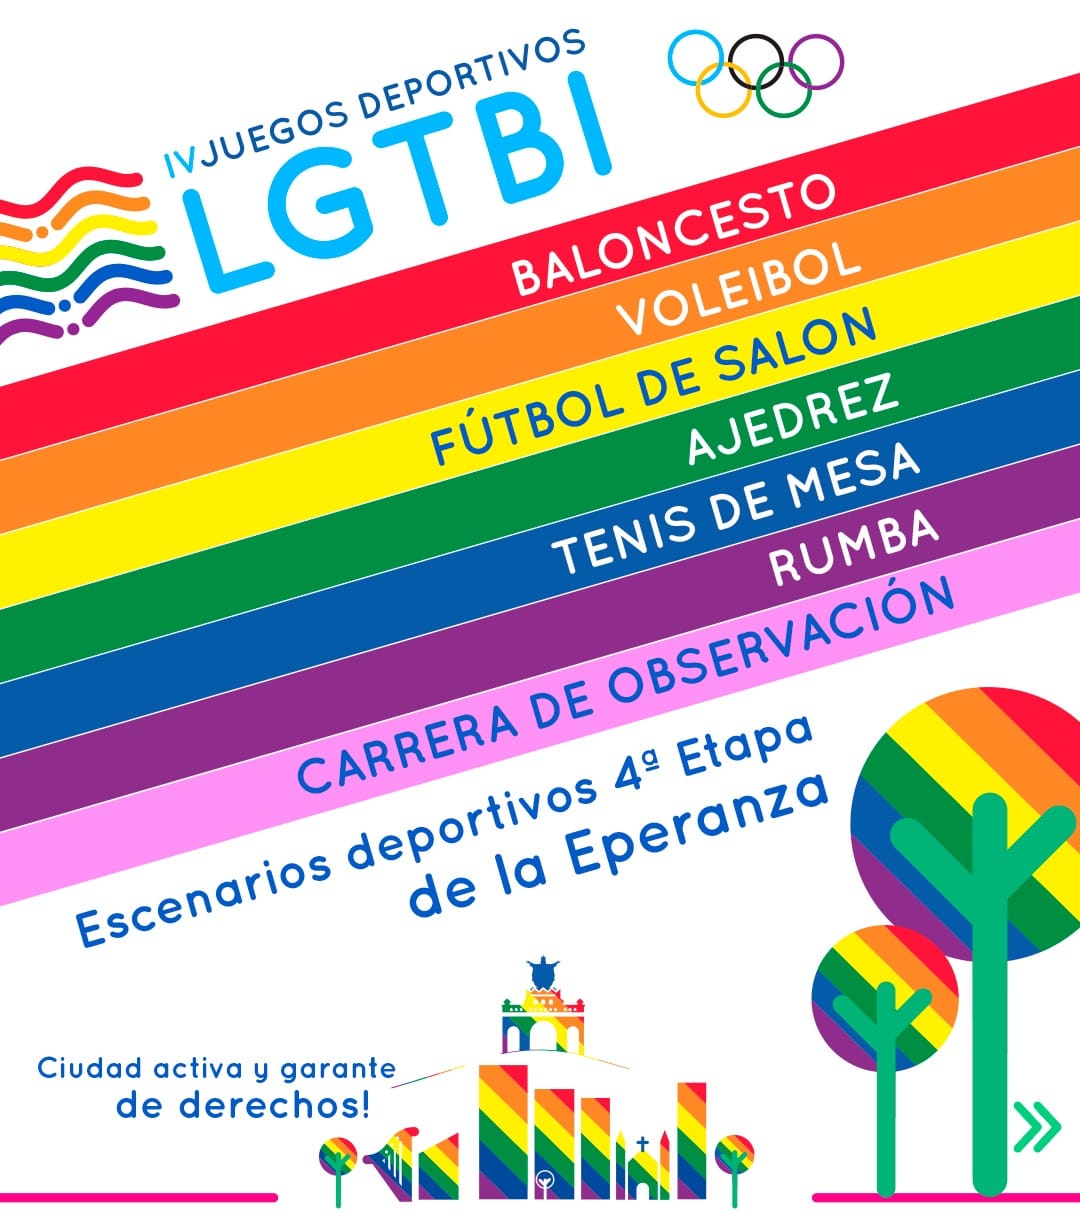 esde este próximo viernes 6 y hasta el domingo 8 de noviembre se llevarán a cabo los Juegos Deportivos Lgtbi en Villavicencio.